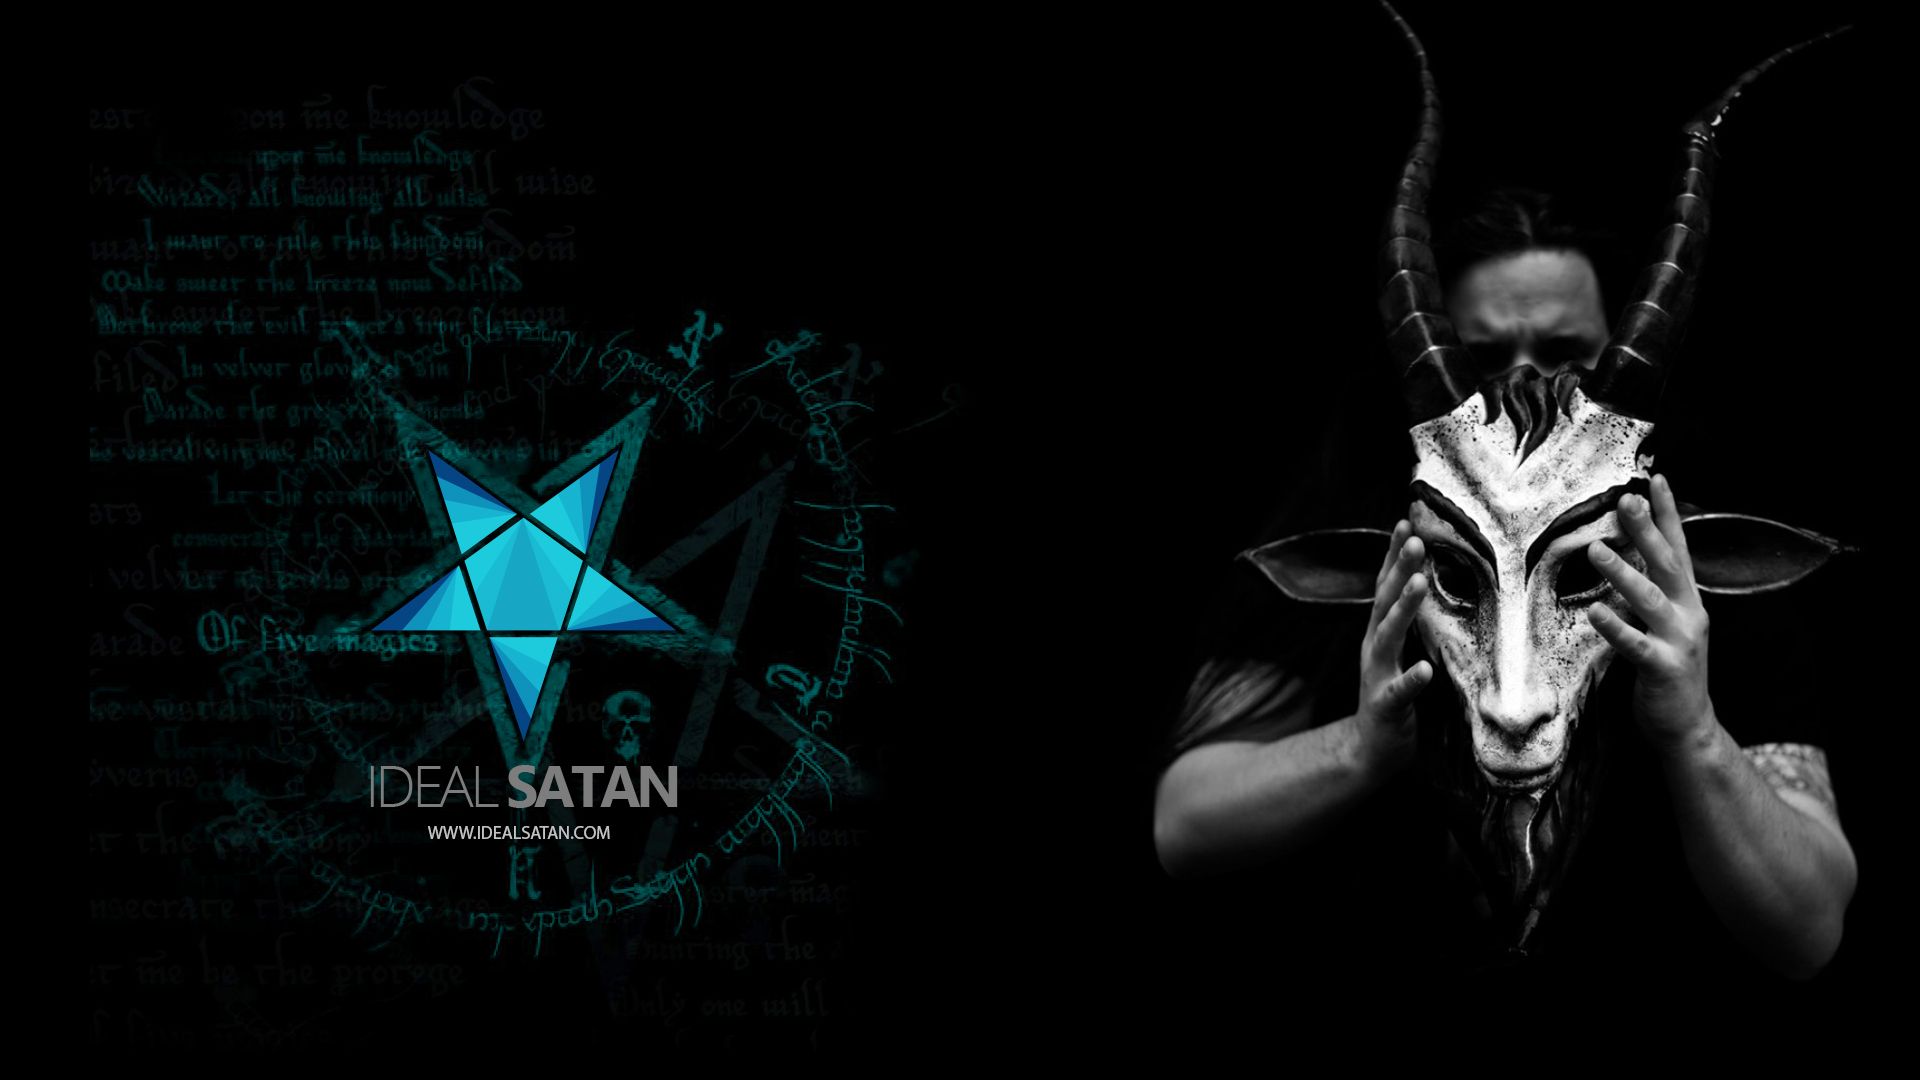 Ideal Satan | Satanic Community | Church of Satan | Lucifer ...